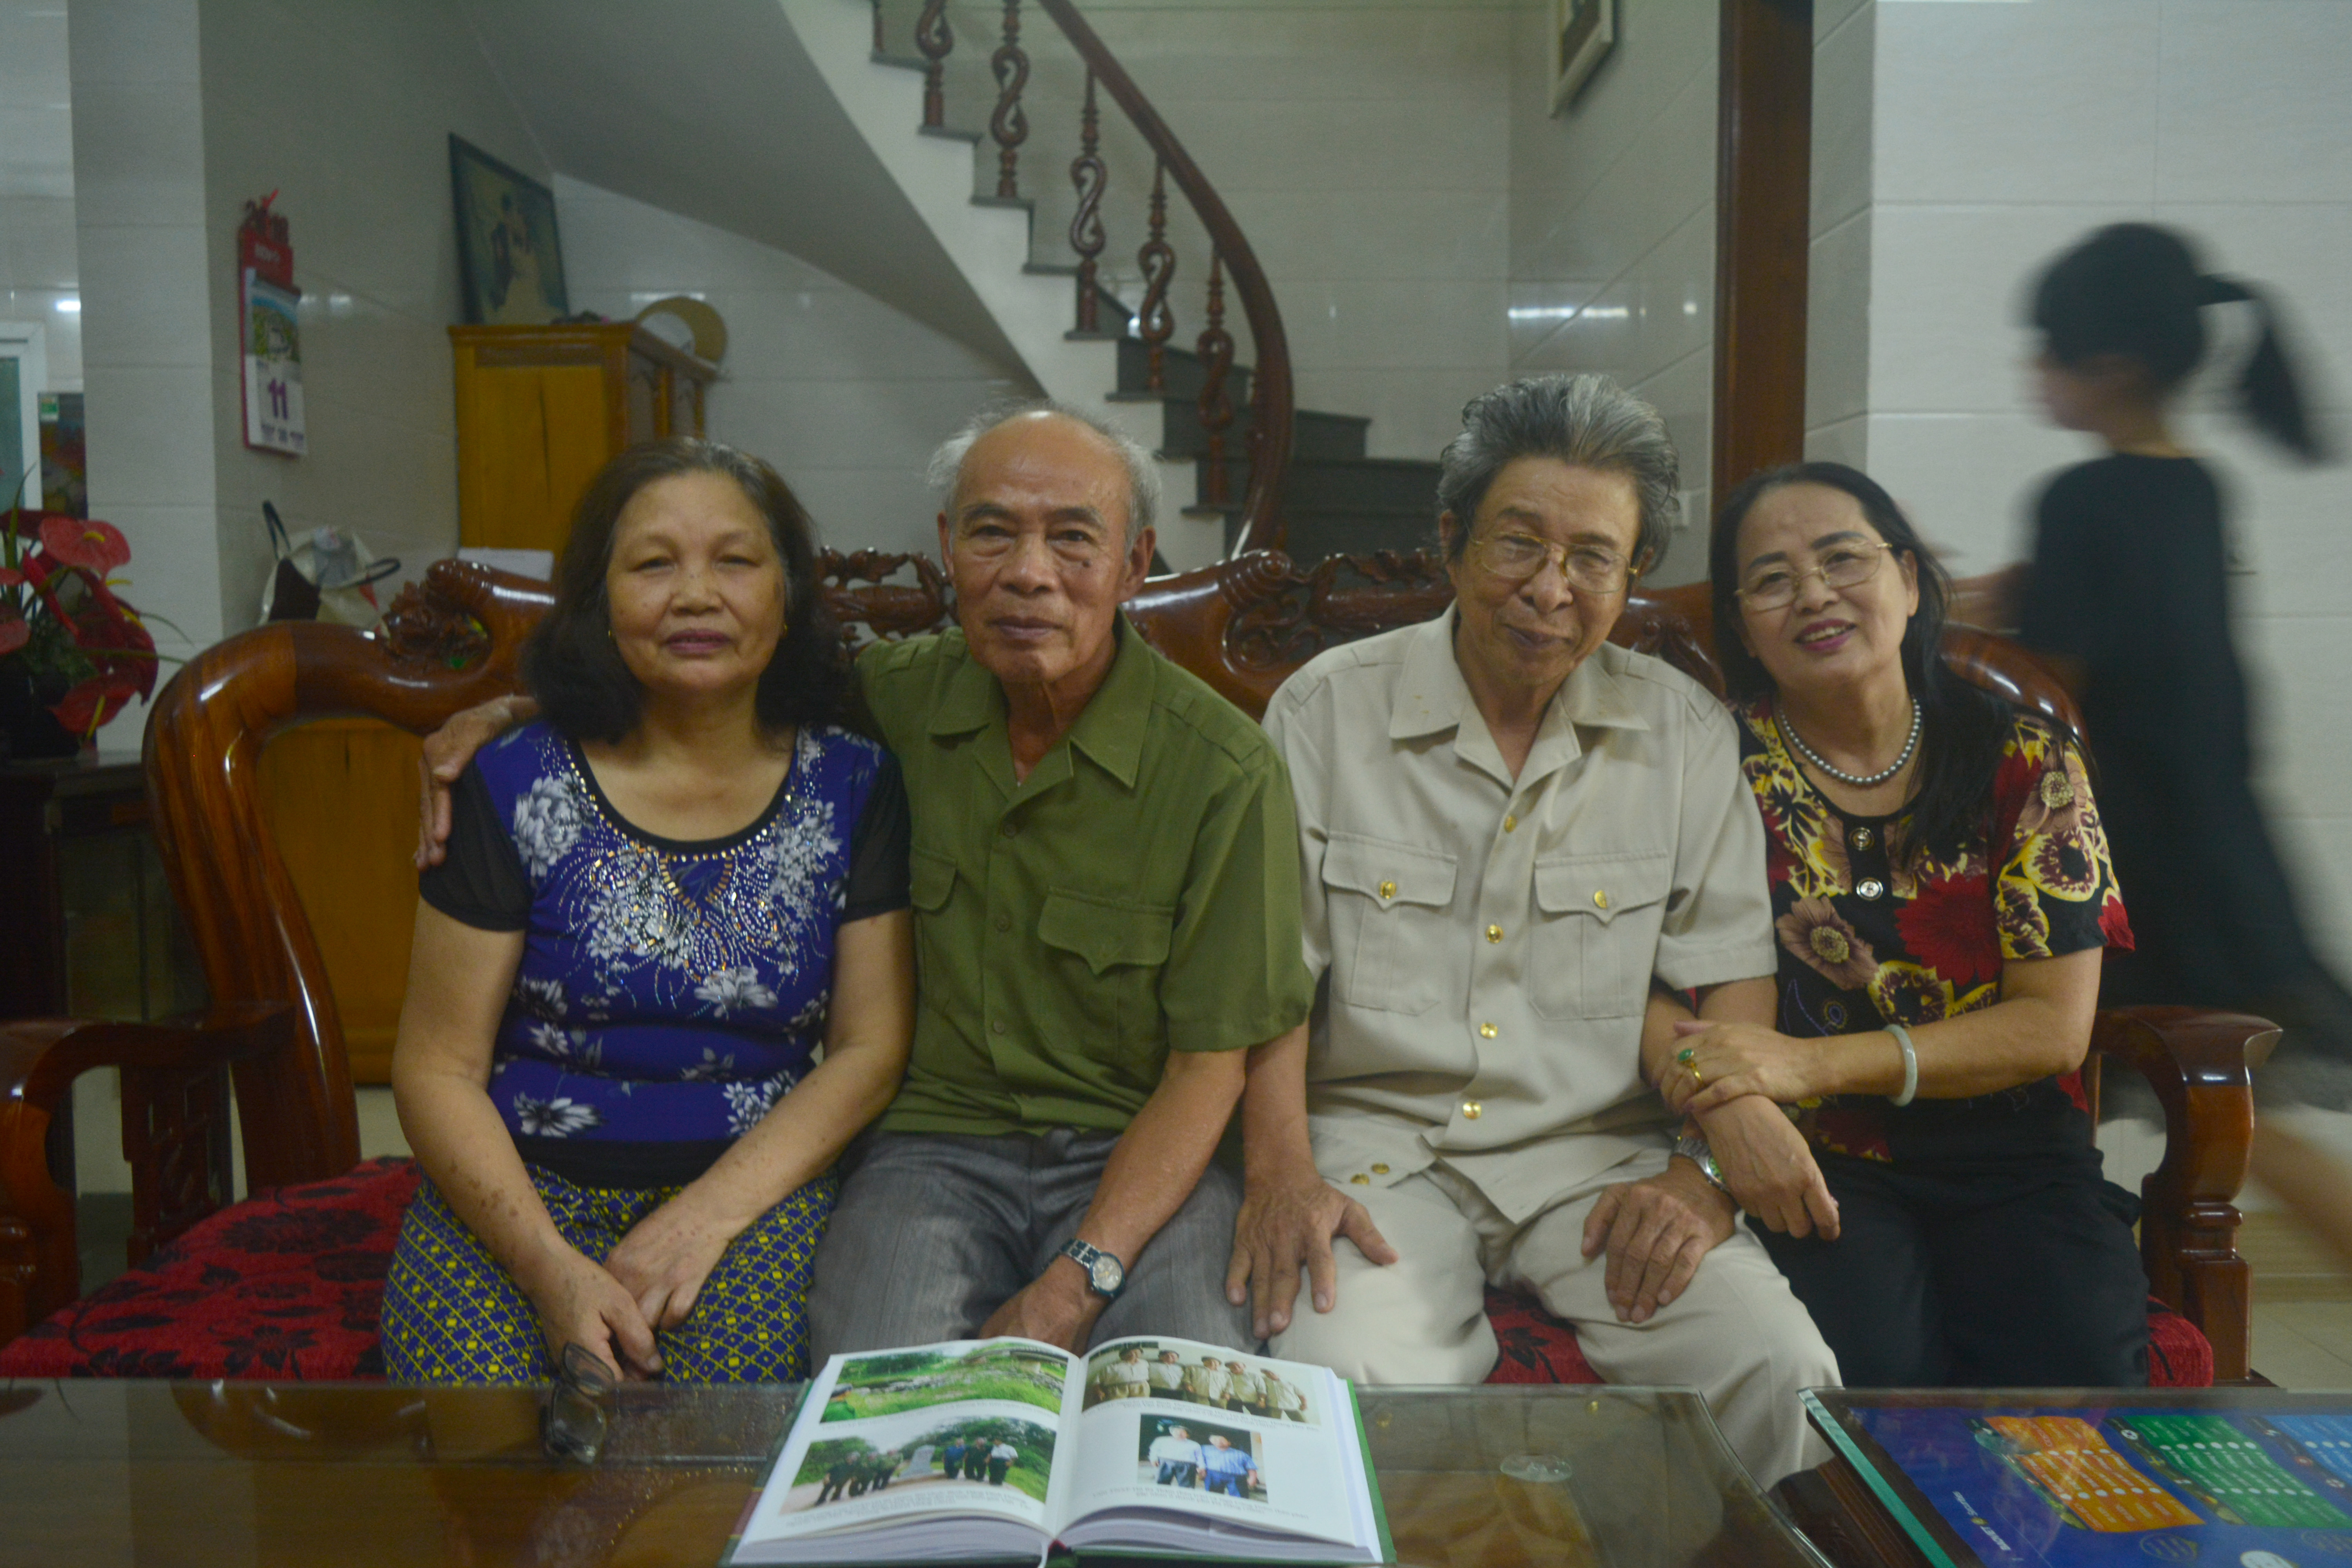 Từ phải qua trái: Nữ cựu TNXP Trịnh Thị Hồng Phúc, nữ TNXP Nghệ An duy nhất trên đường 20 Quyết thắng, TS Hồ Bá Thâm và vợ chồng cựu TNXP Trần Văn Thân